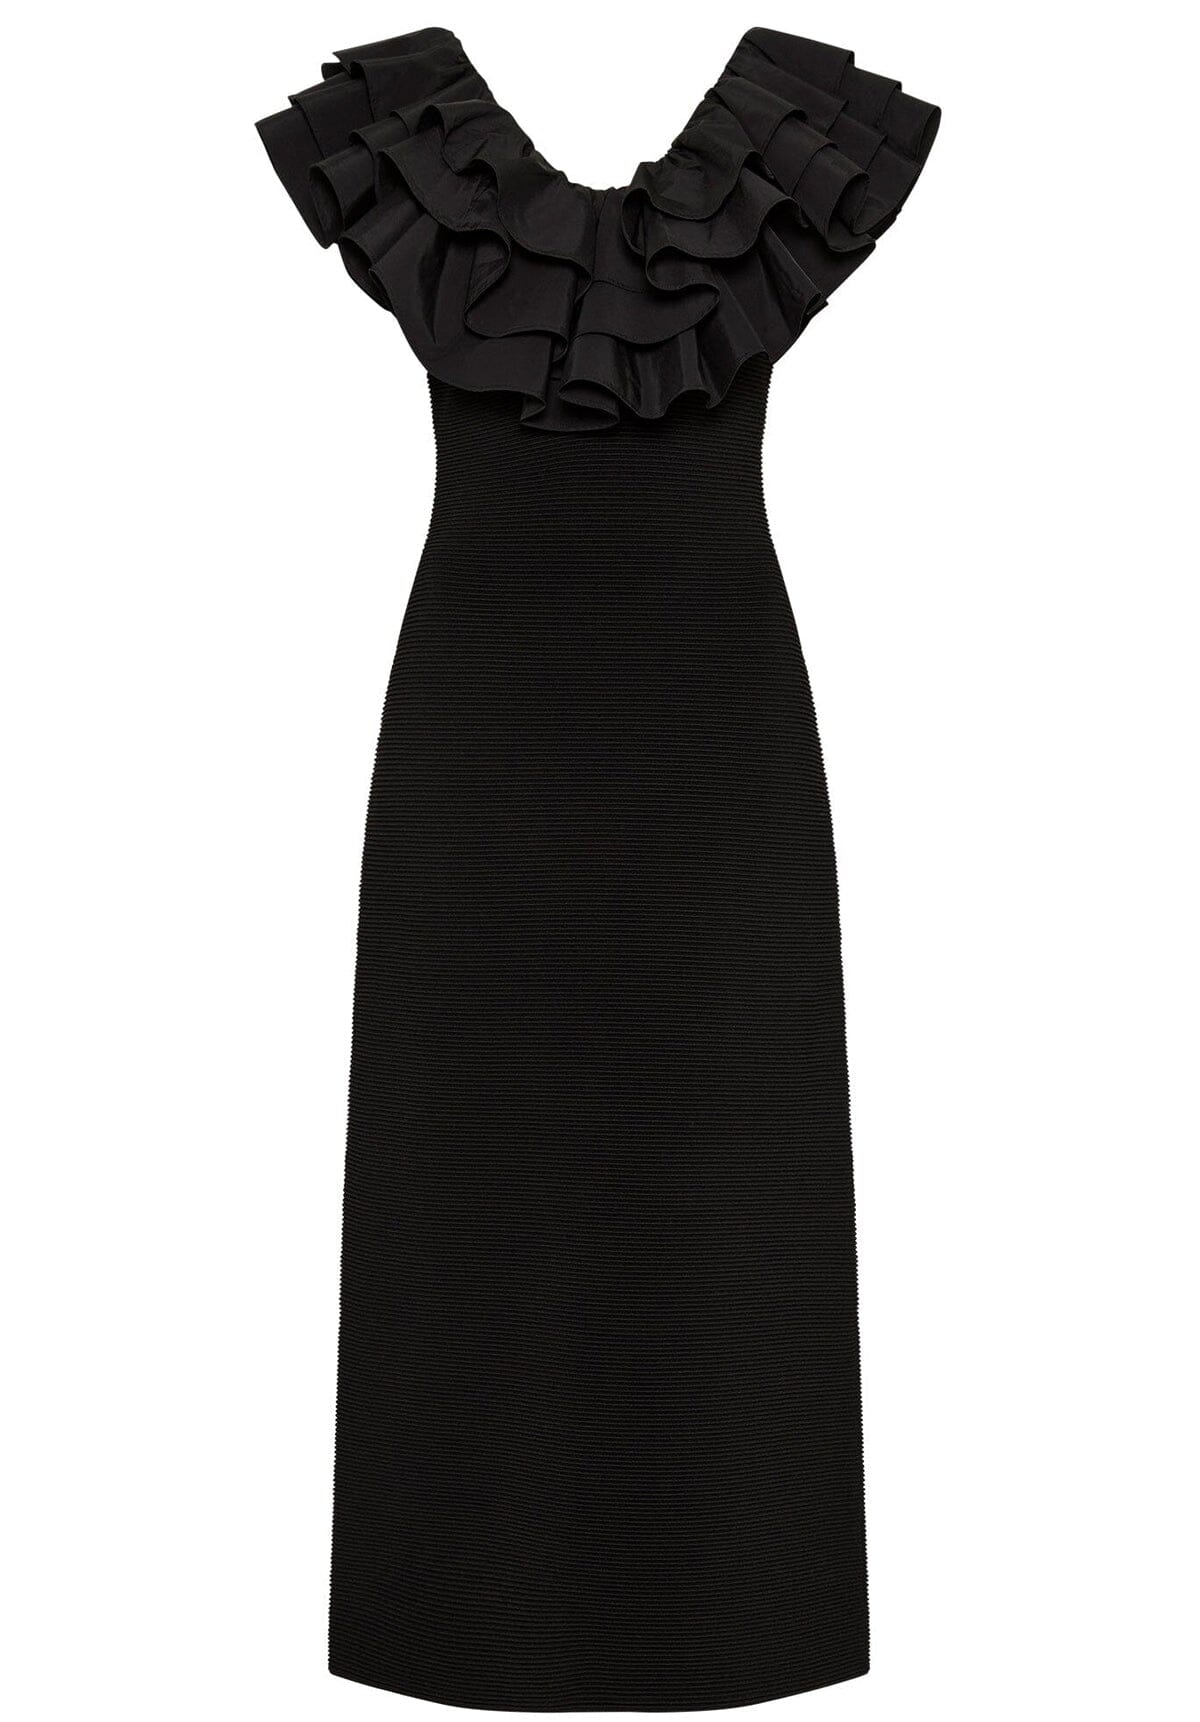 Transcendent Ruffle Midi Dress Black Clothing Aje 